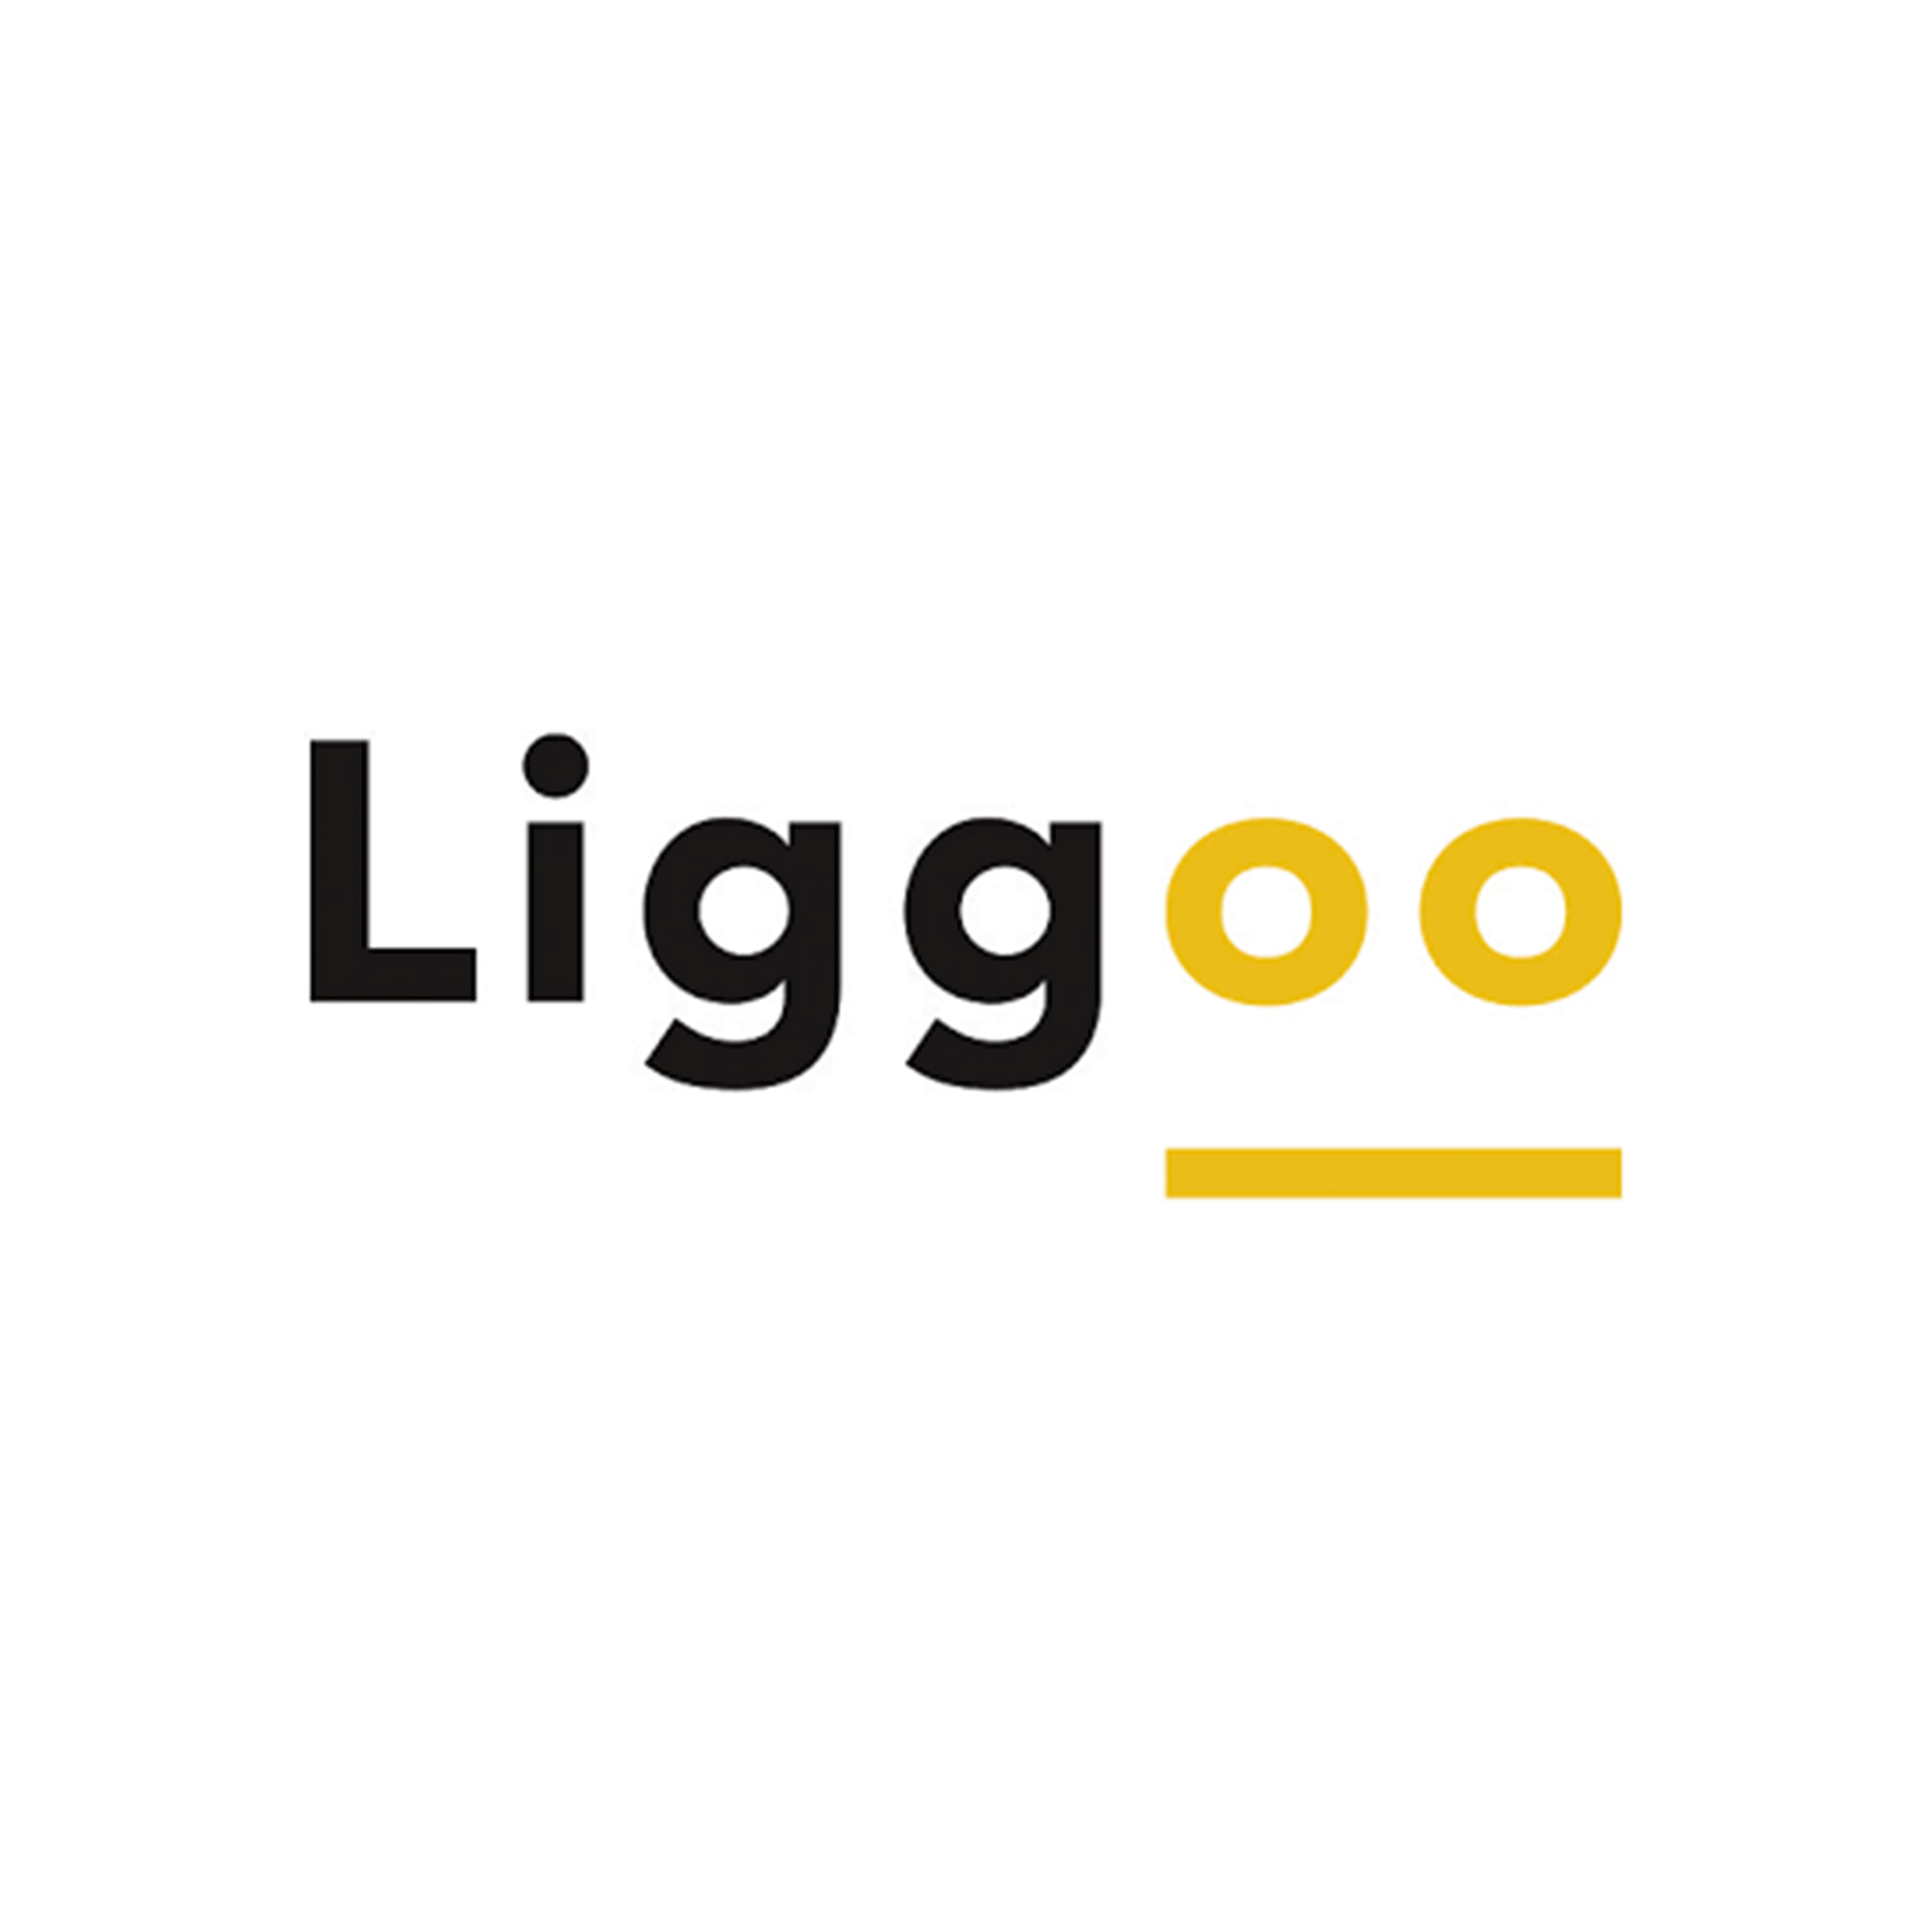 Liggoo.png